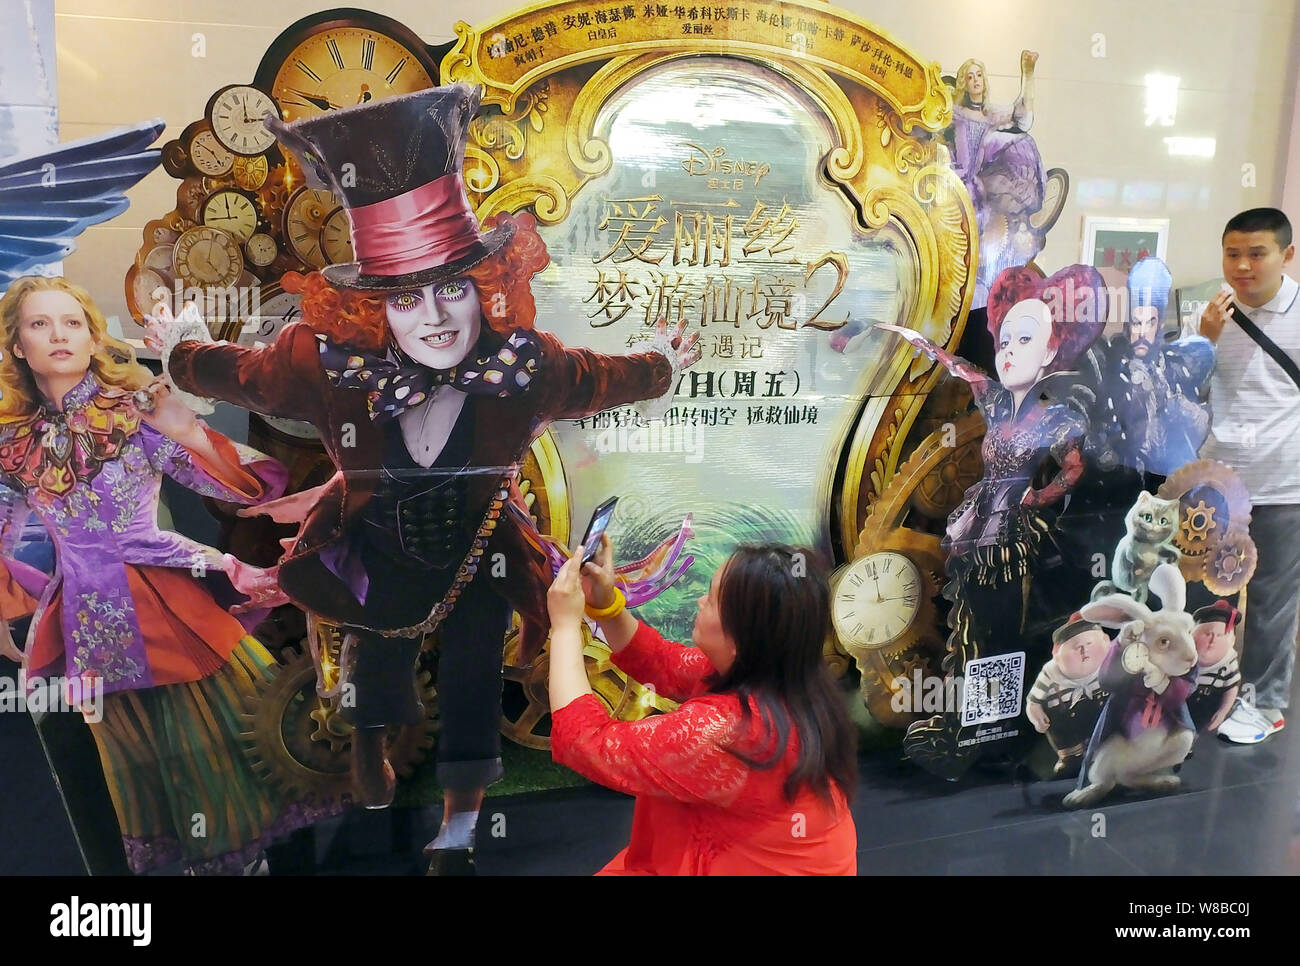 Eine Chinesische filmgoer nimmt Bilder von einem Ausschnitt Plakat des Films "Alice Through the Looking Glass" in einem Kino in Kunshan City, Central China Hube Stockfoto